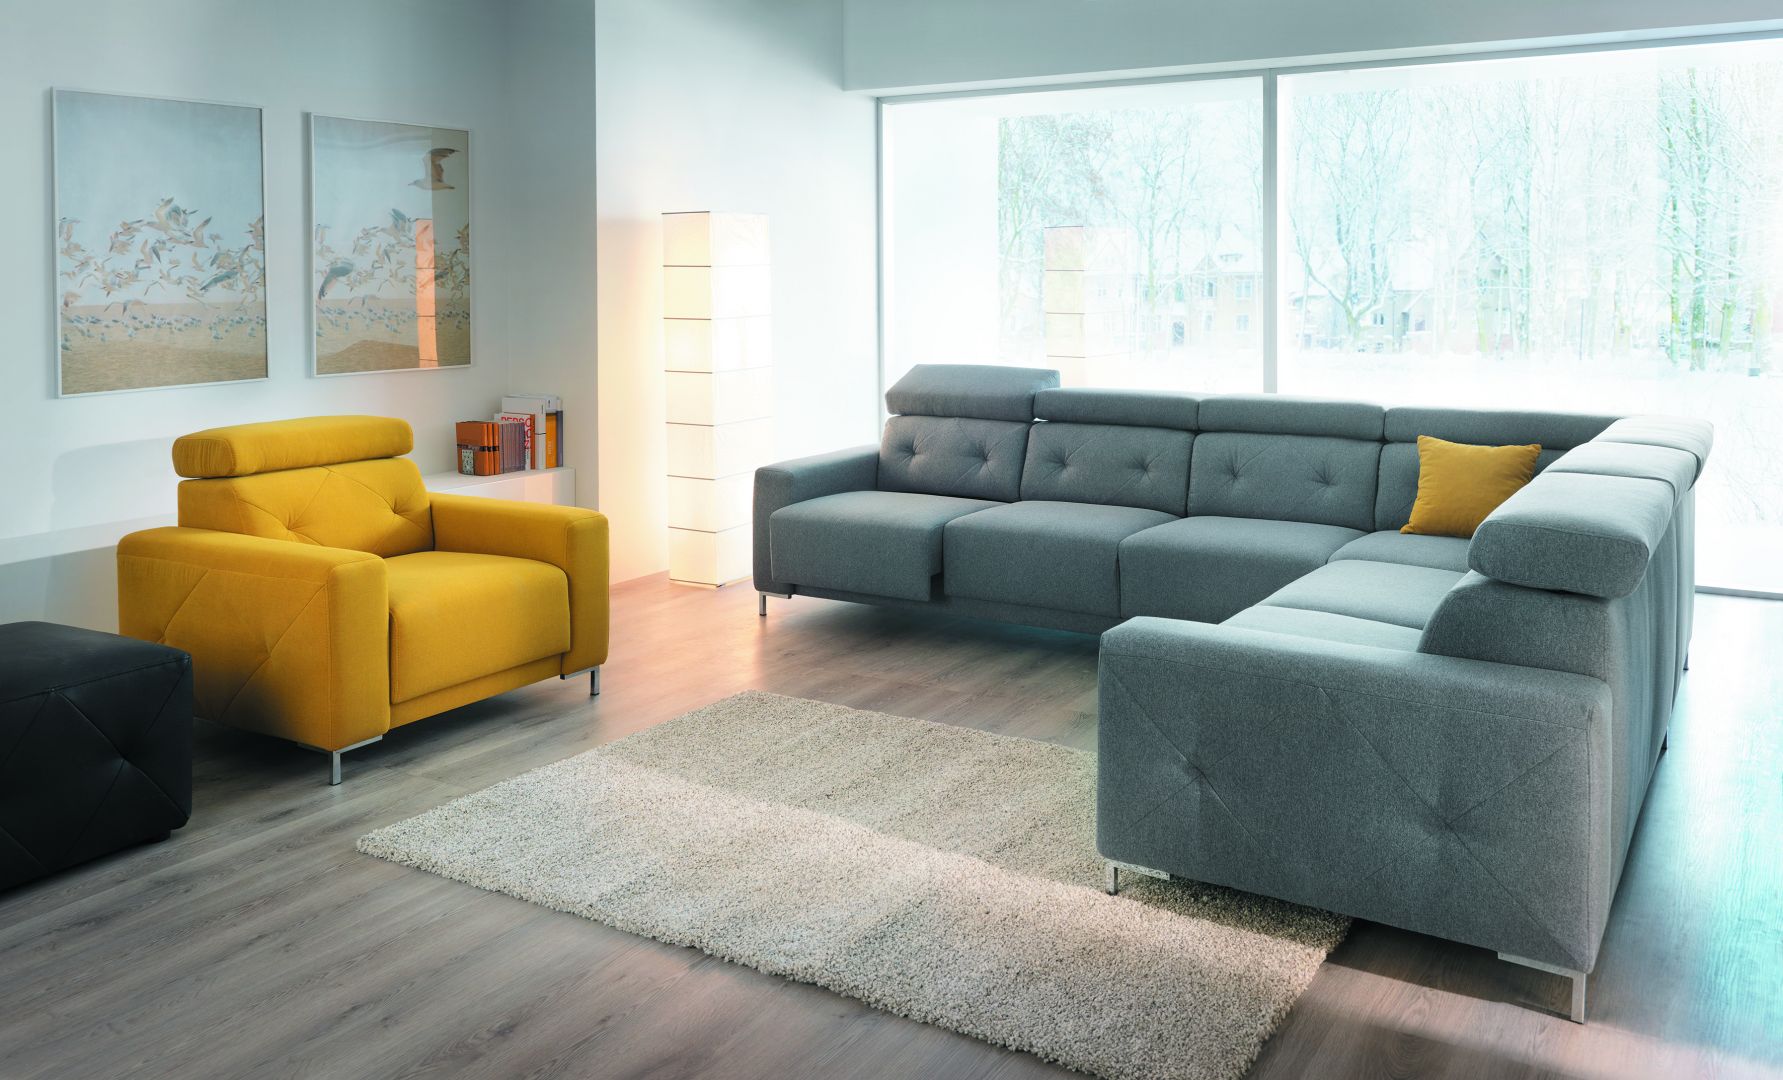 Przytulna sofa albo wygodny narożnik - idealny mebel tapicerowany musi być dopasowany do naszego wnętrza. Fot. Wajnert Meble